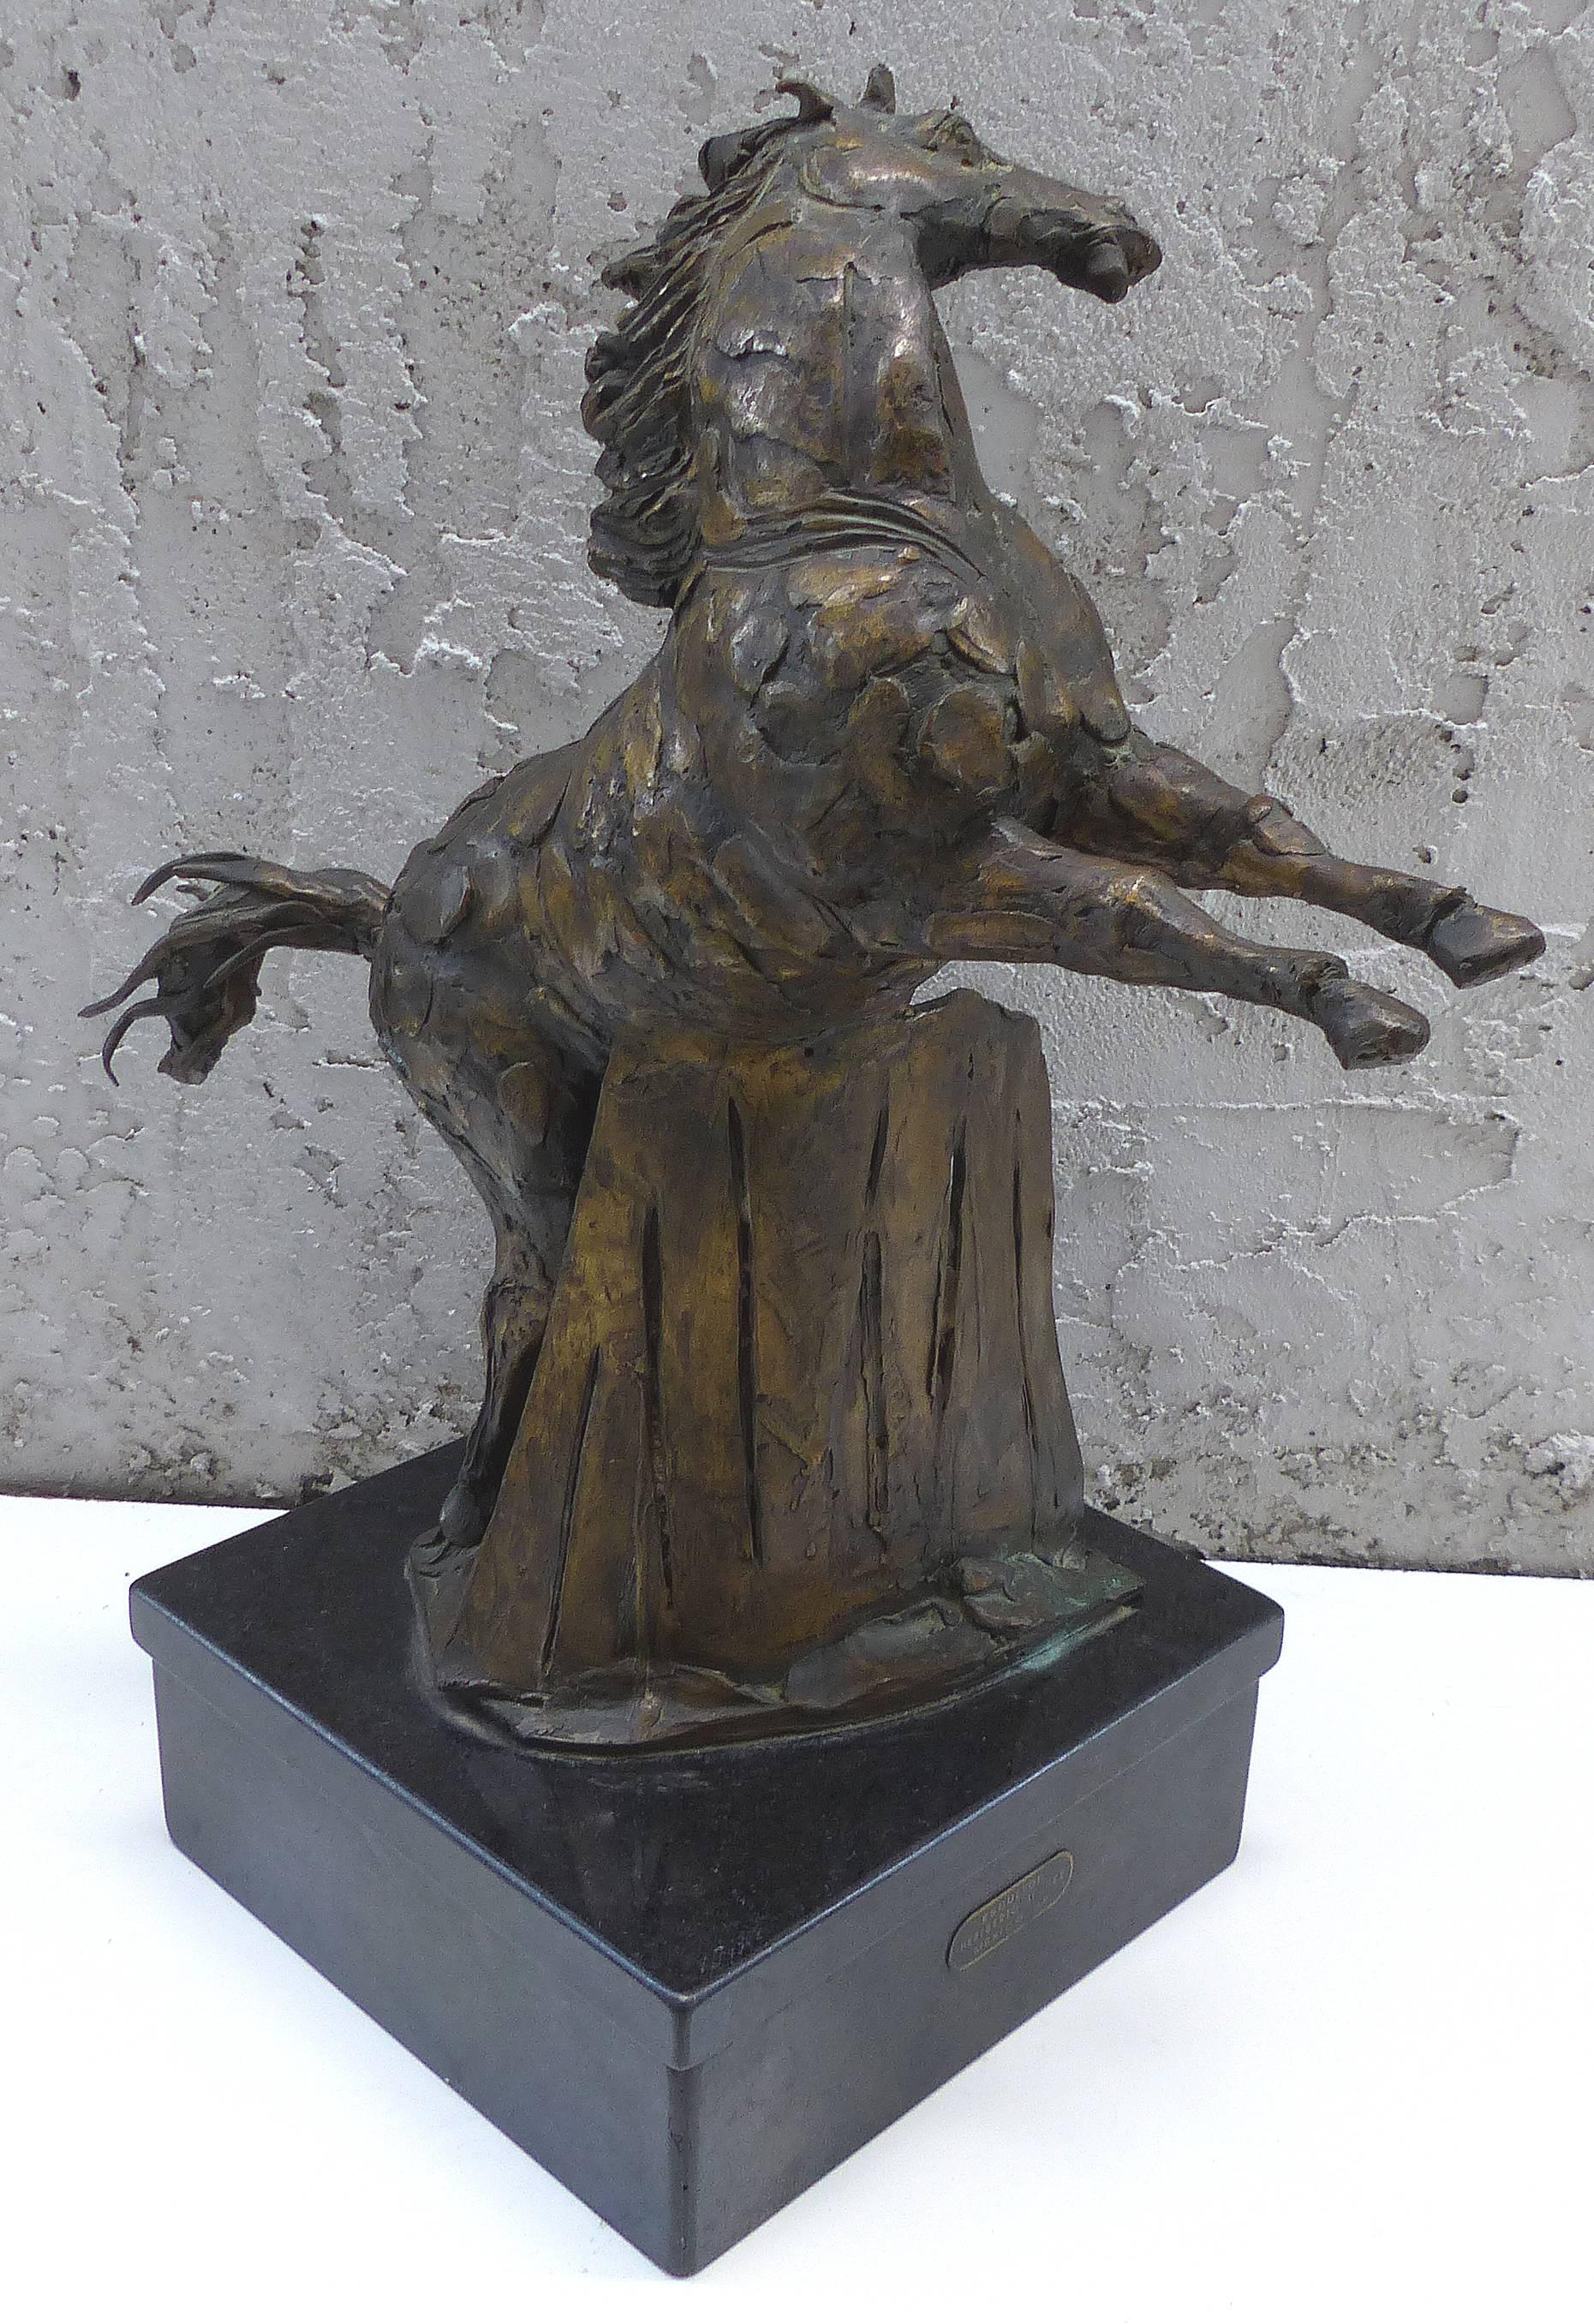 Zum Verkauf angeboten wird eine Bronzeskulptur eines sich aufbäumenden Pferdes des mexikanischen Künstlers Heriberto Jaurez. Heriberto Juárez (16. März 1932 - 26. August 2008) war ein autodidaktischer mexikanischer Bildhauer, der für seine